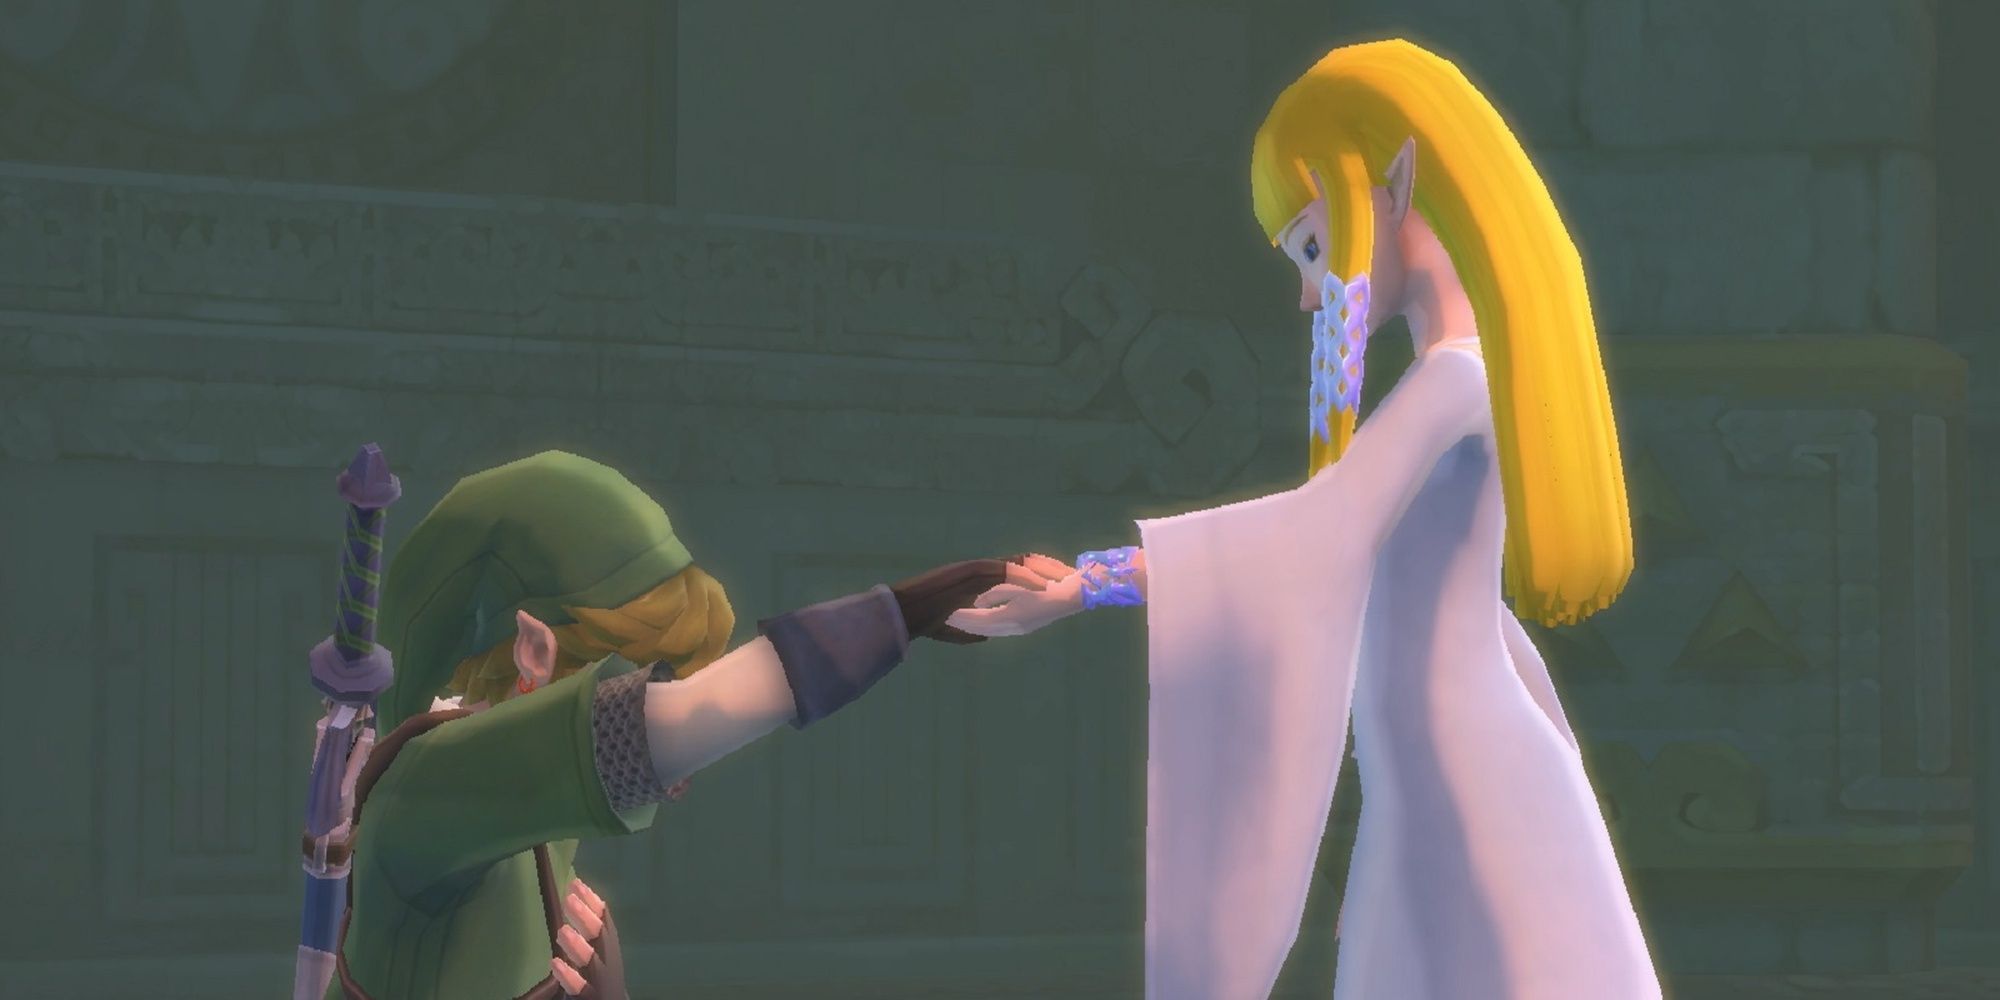 Link kneels in front of Zelda in ceremonial wear from Skyward Sword.